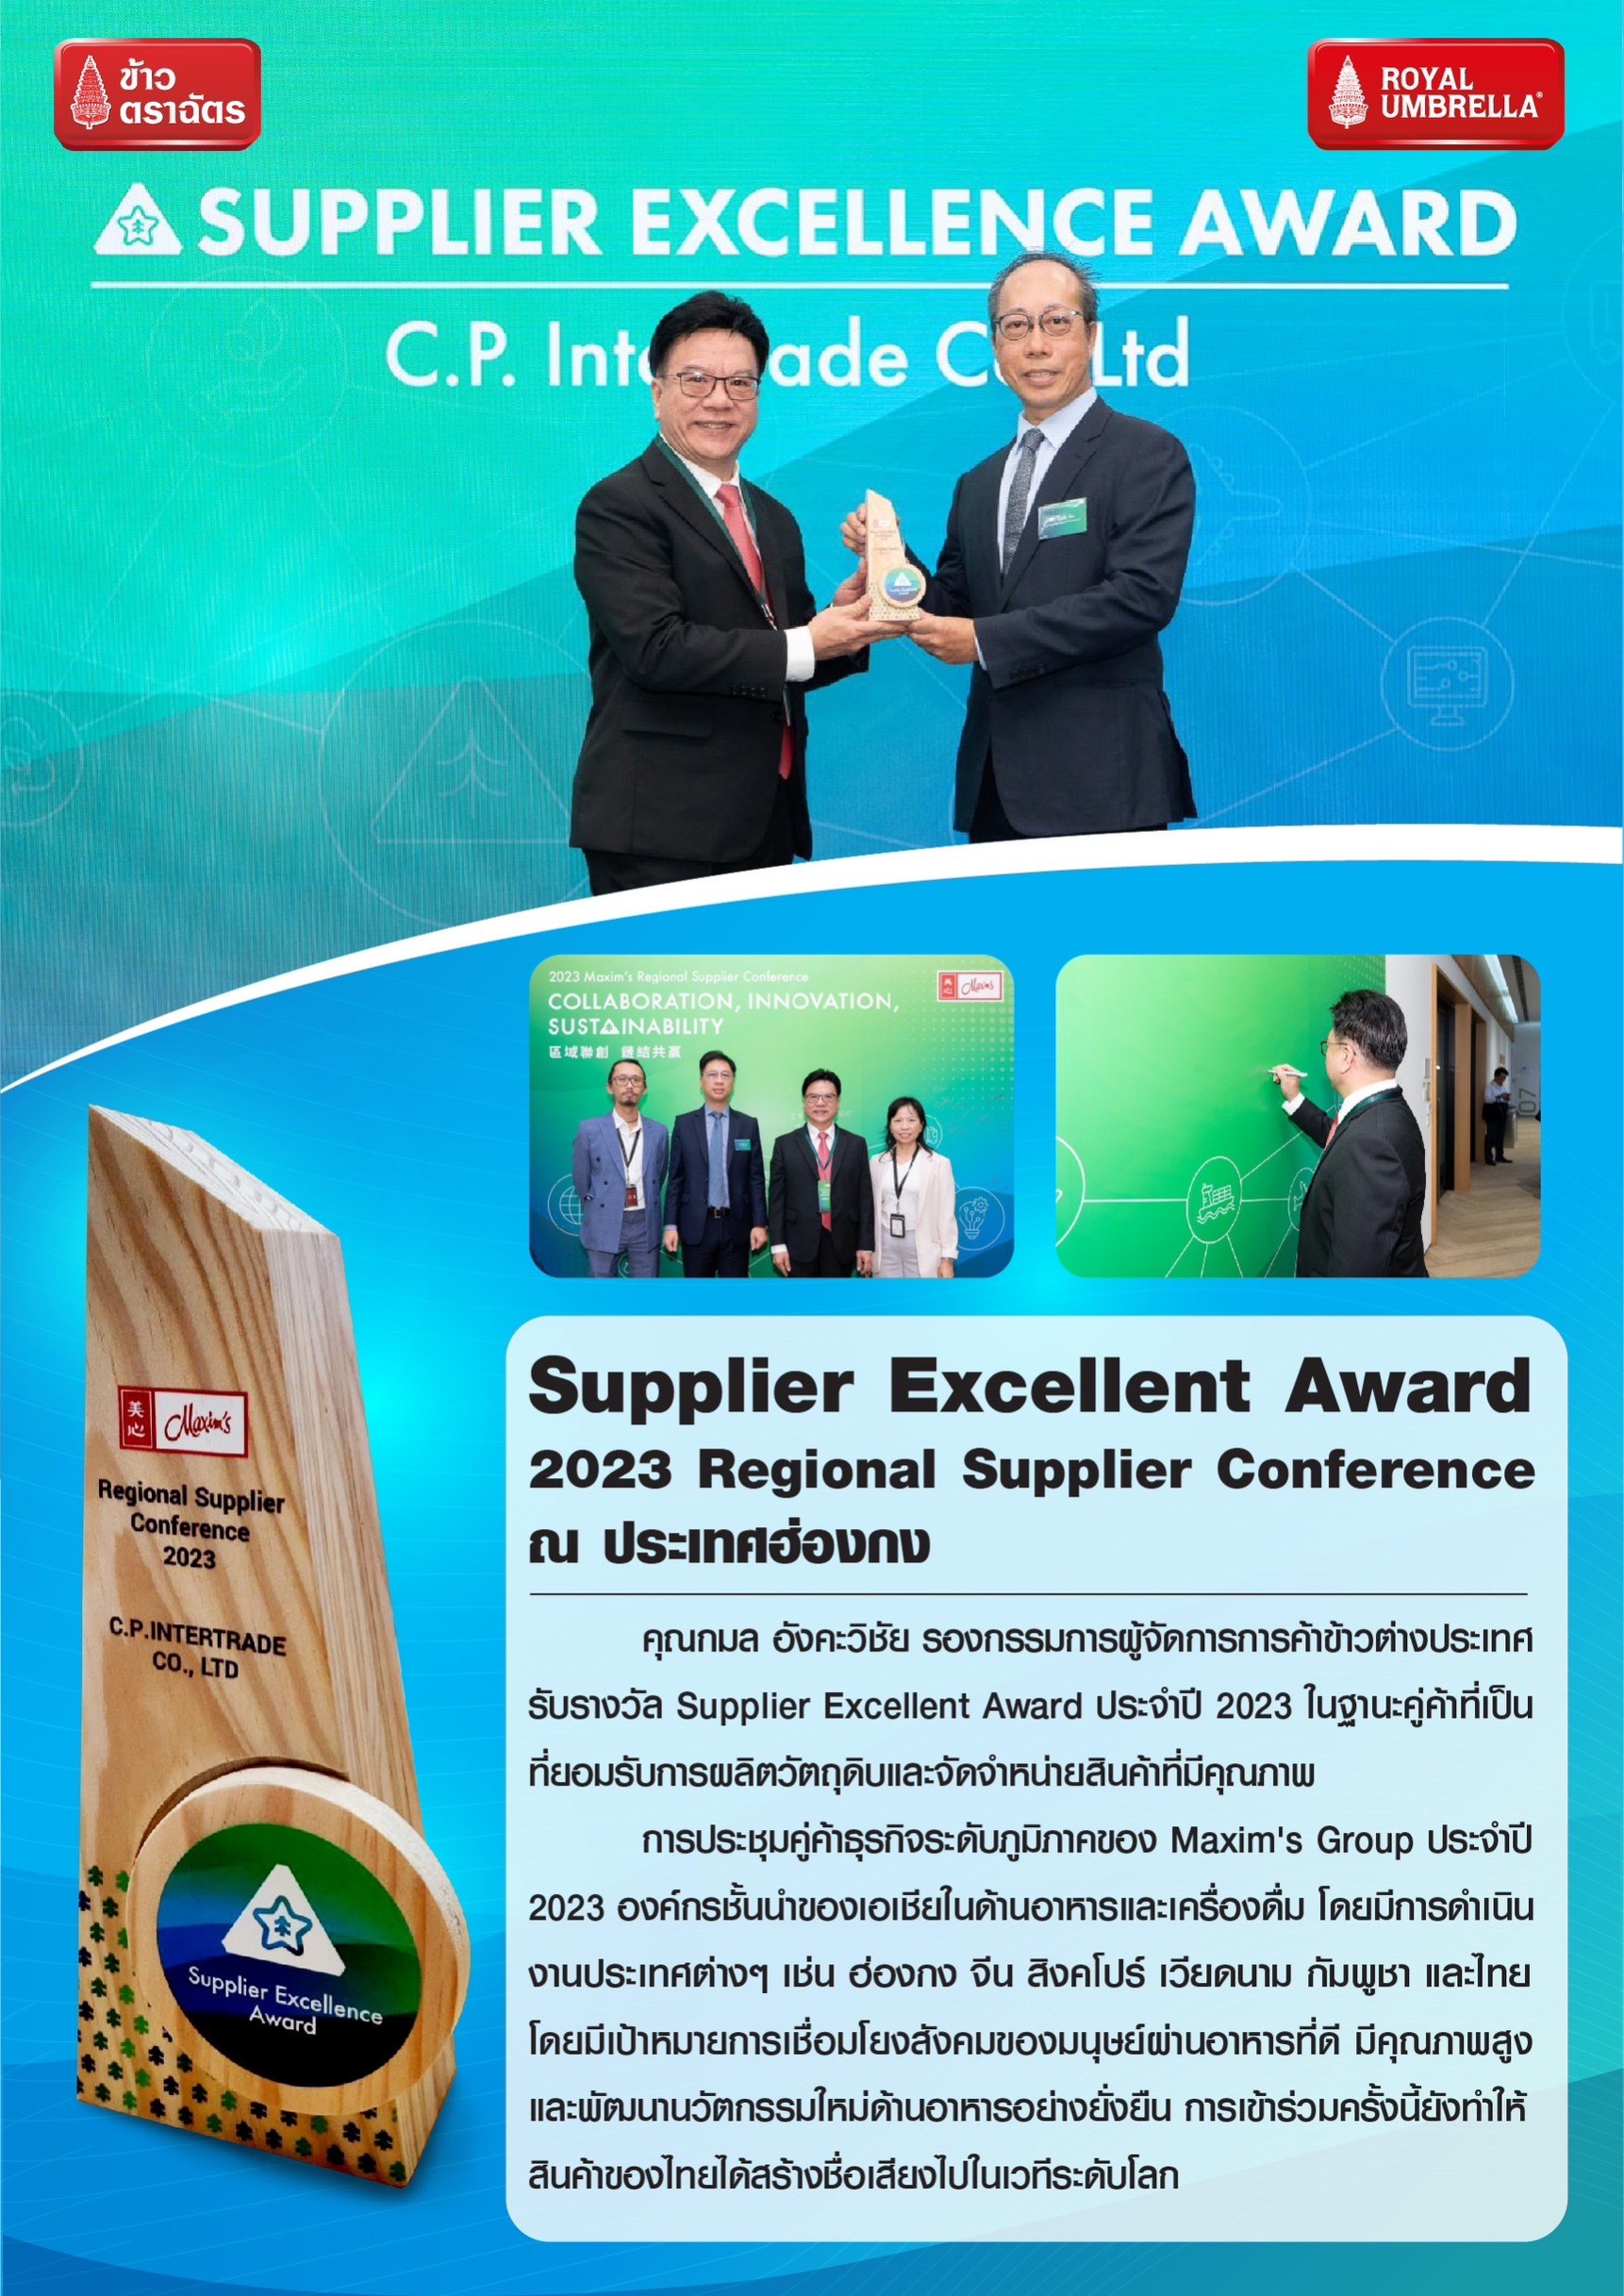 รับรางวัล Supplier Excellent Award ในงาน 2023 Regional Supplier Conference ณ ประเทศฮ่องกง